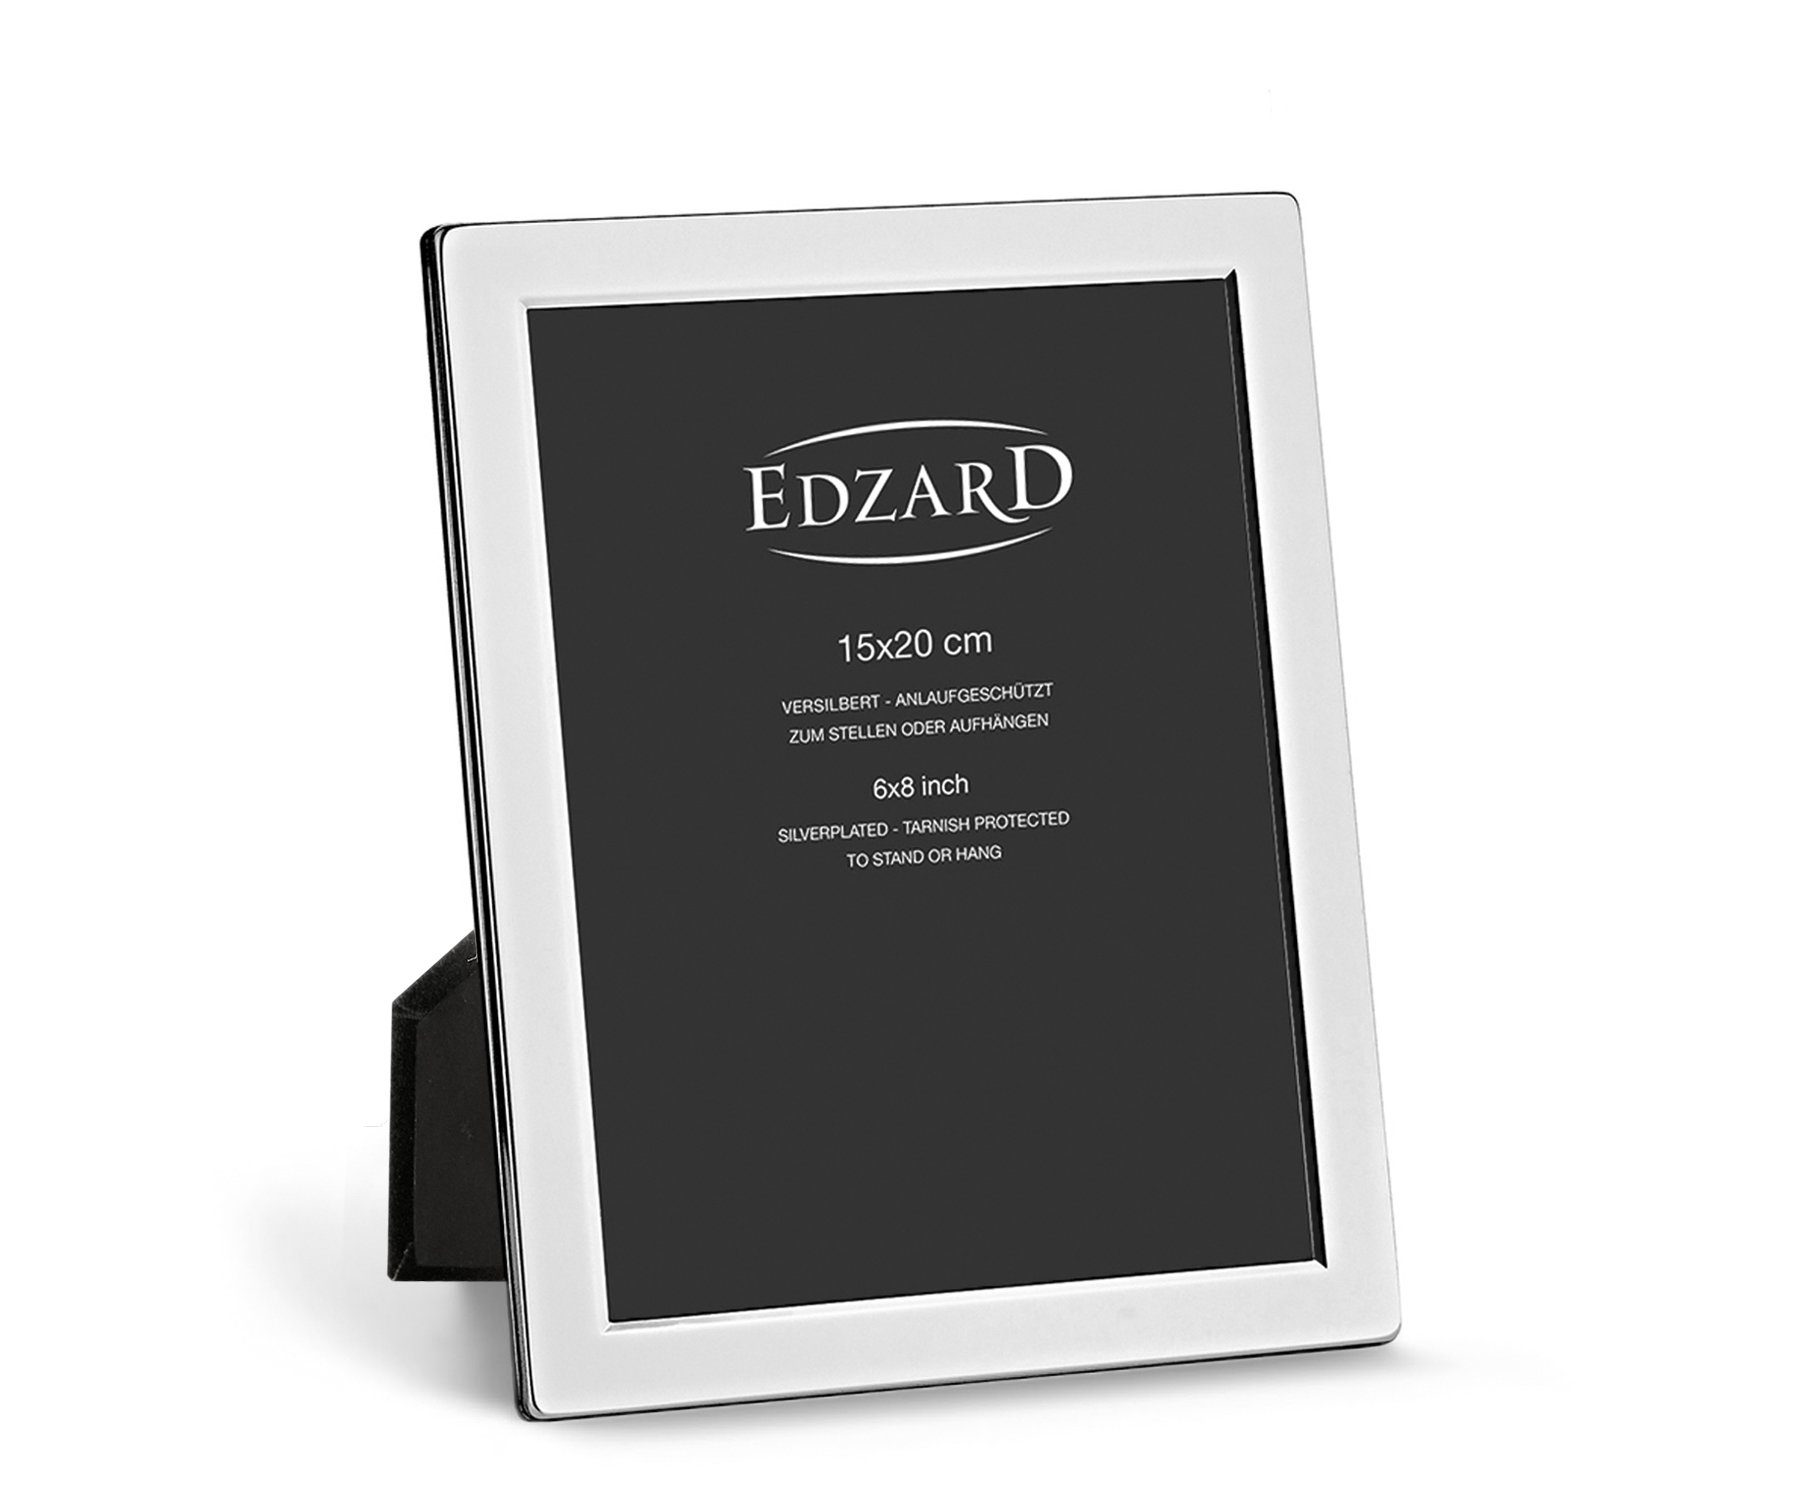 EDZARD Bilderrahmen Salerno, für anlaufgeschützt, versilbert 15x20 und Foto cm